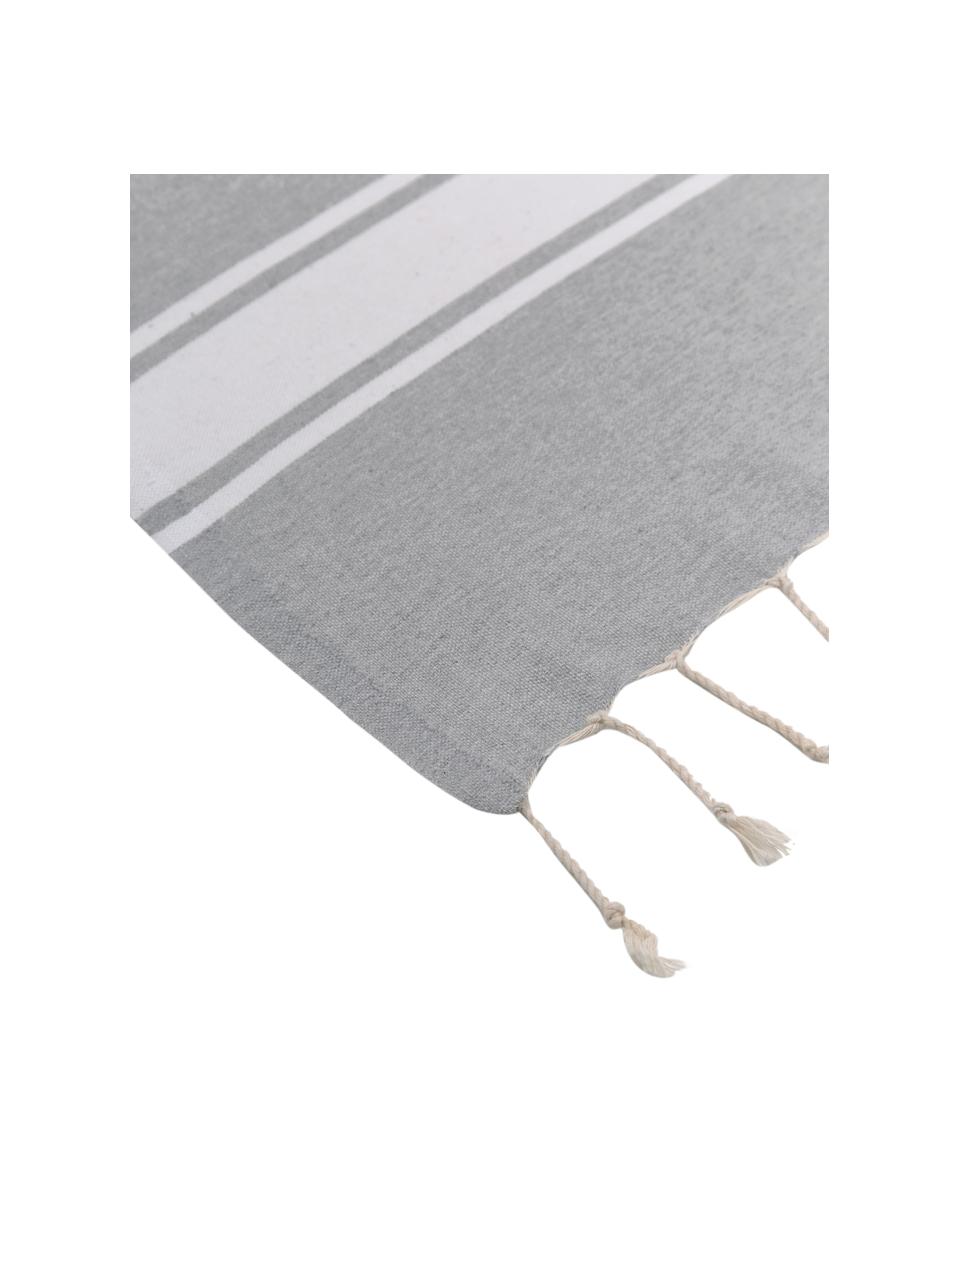 Hamamtuch St Tropez mit Streifen und Fransen, 100% Baumwolle, Grau, Weiss, B 100 x L 200 cm